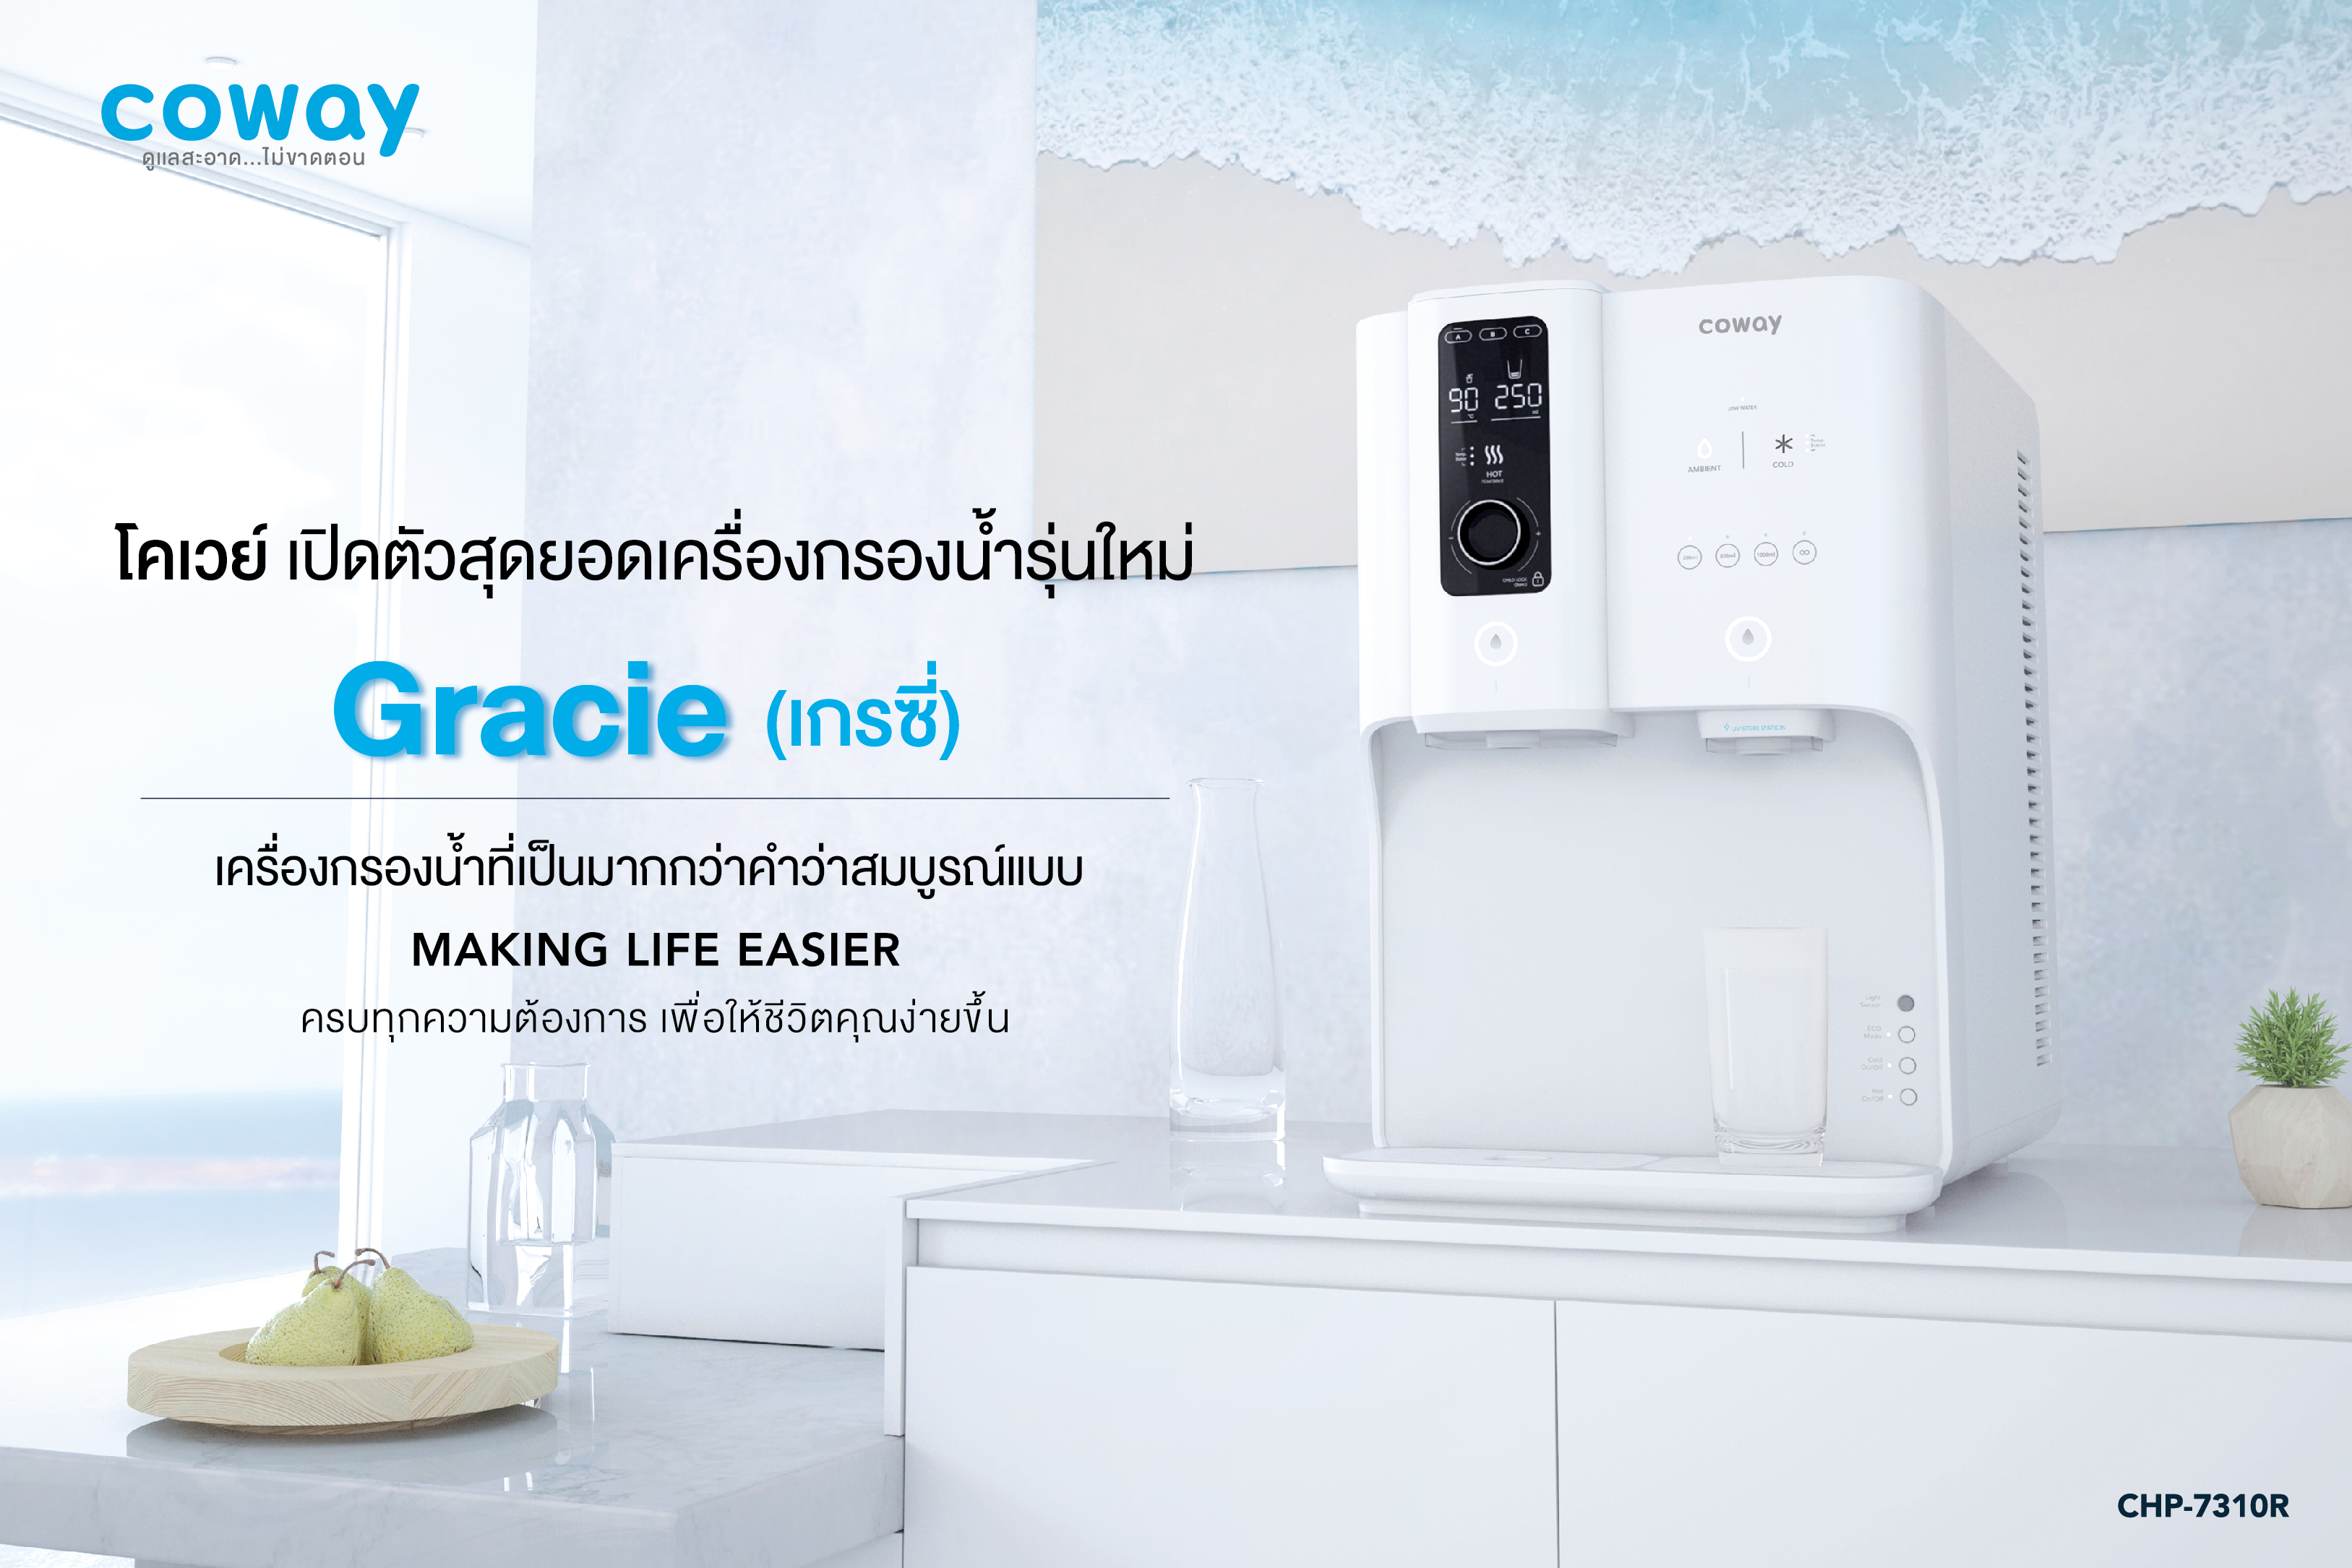 BEYOND PERFECTION  COWAY เปิดตัว ‘GRACIE’ เครื่องกรองน้ำที่เป็นมากกว่าคำว่าสมบูรณ์แบบ  เครื่องเดียวในประเทศไทยที่สามารถเลือกปรับอุณหภูมิสูงสุด 8 ระดับ!